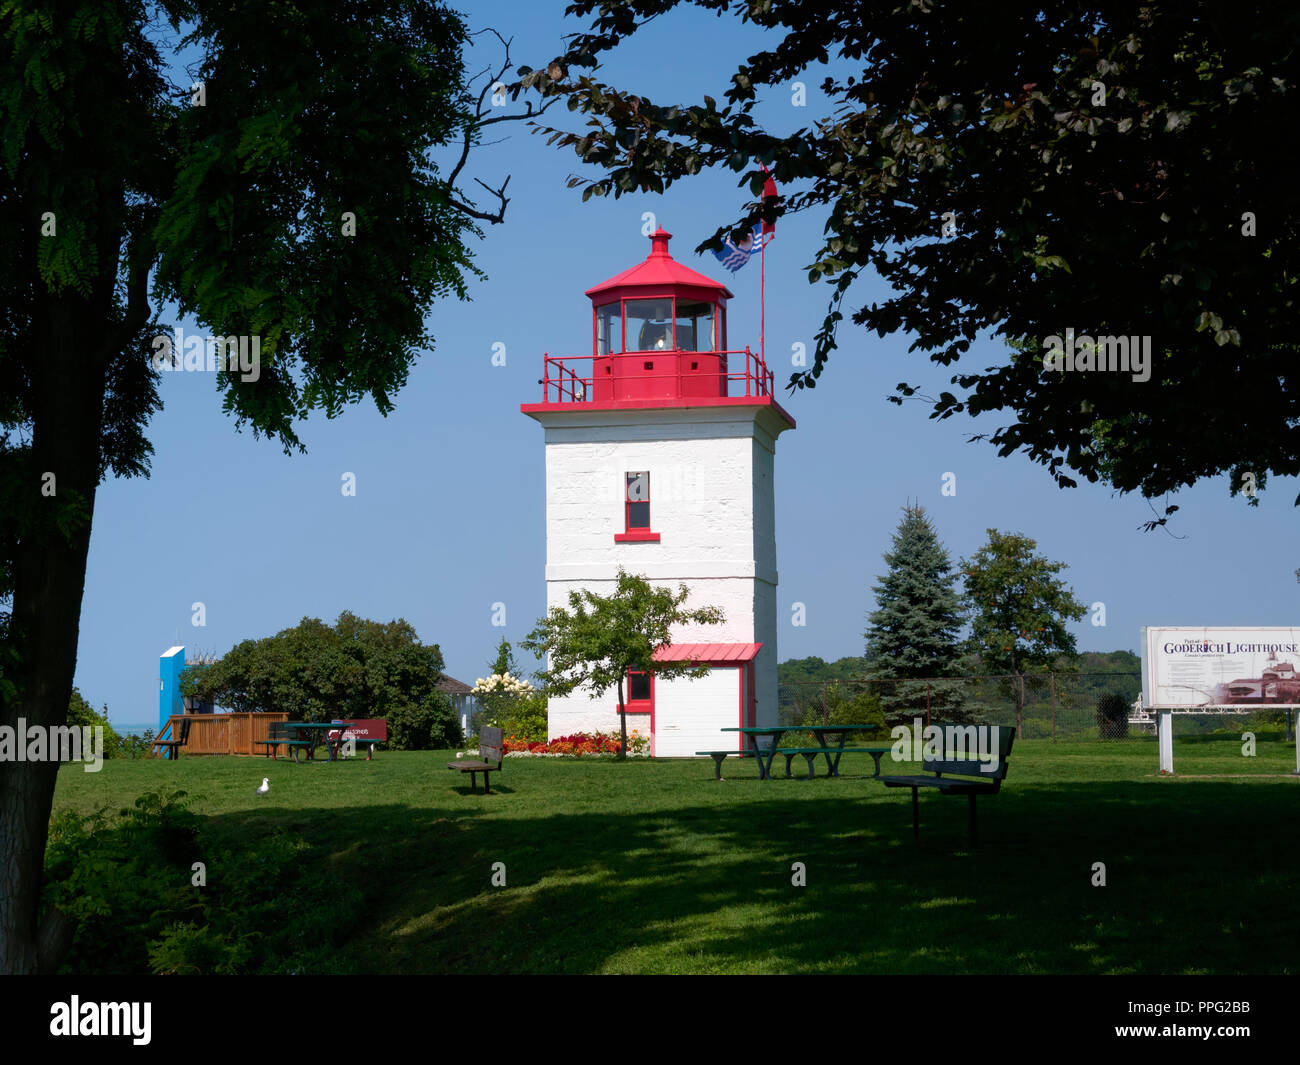 Goderich Lighthouse on Lake Huron, Ontario Stock Photo